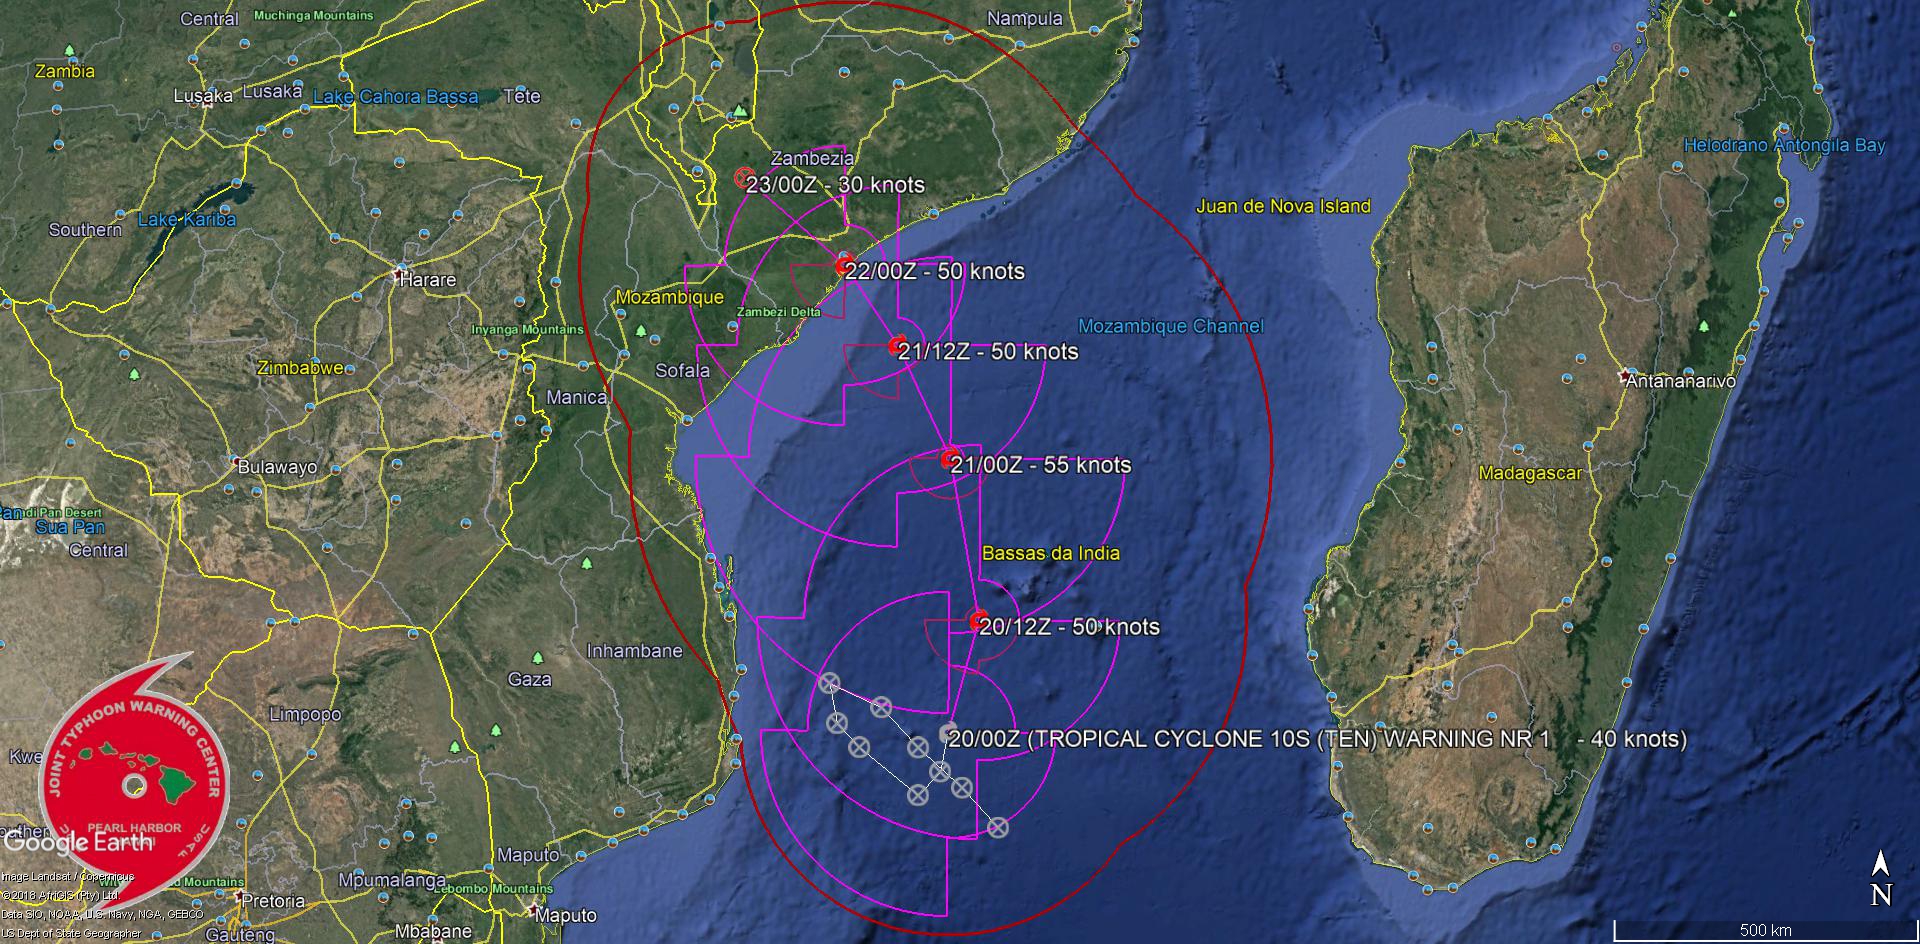 Trajectoire et intensité prévues par le JTWC dans son premier "warning" sur ce système.NB: "tropical cyclone" est le terme scientifique qui regroupe les systèmes à l'intensité de dépression, tempête et cyclones tropicaux.